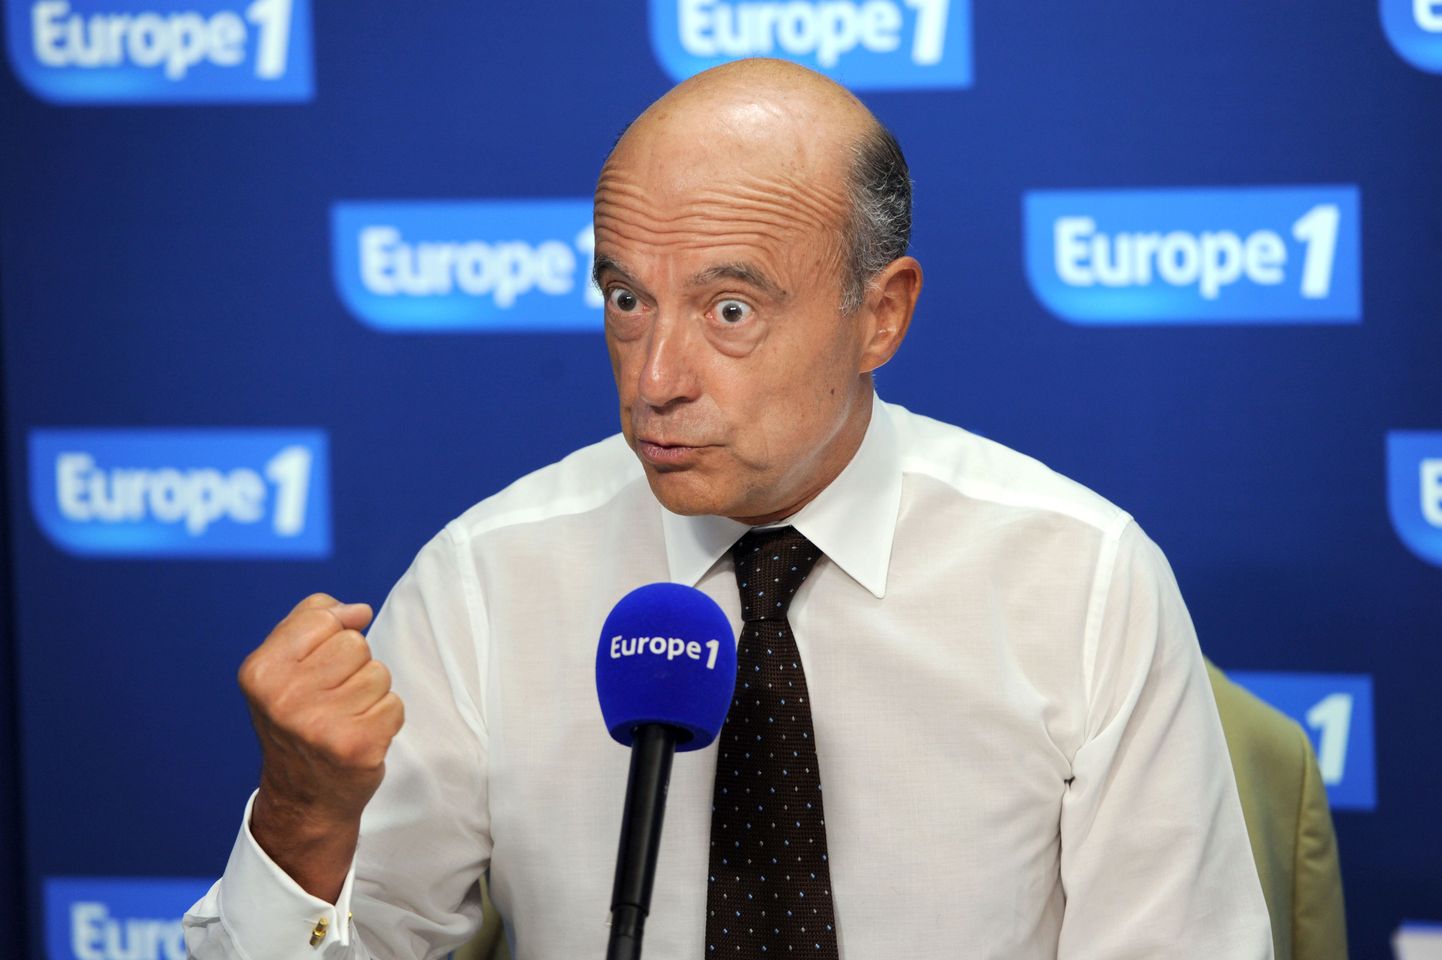 Prantsuse välisminister Alain Juppé täna raadiojaamas Europe 1.